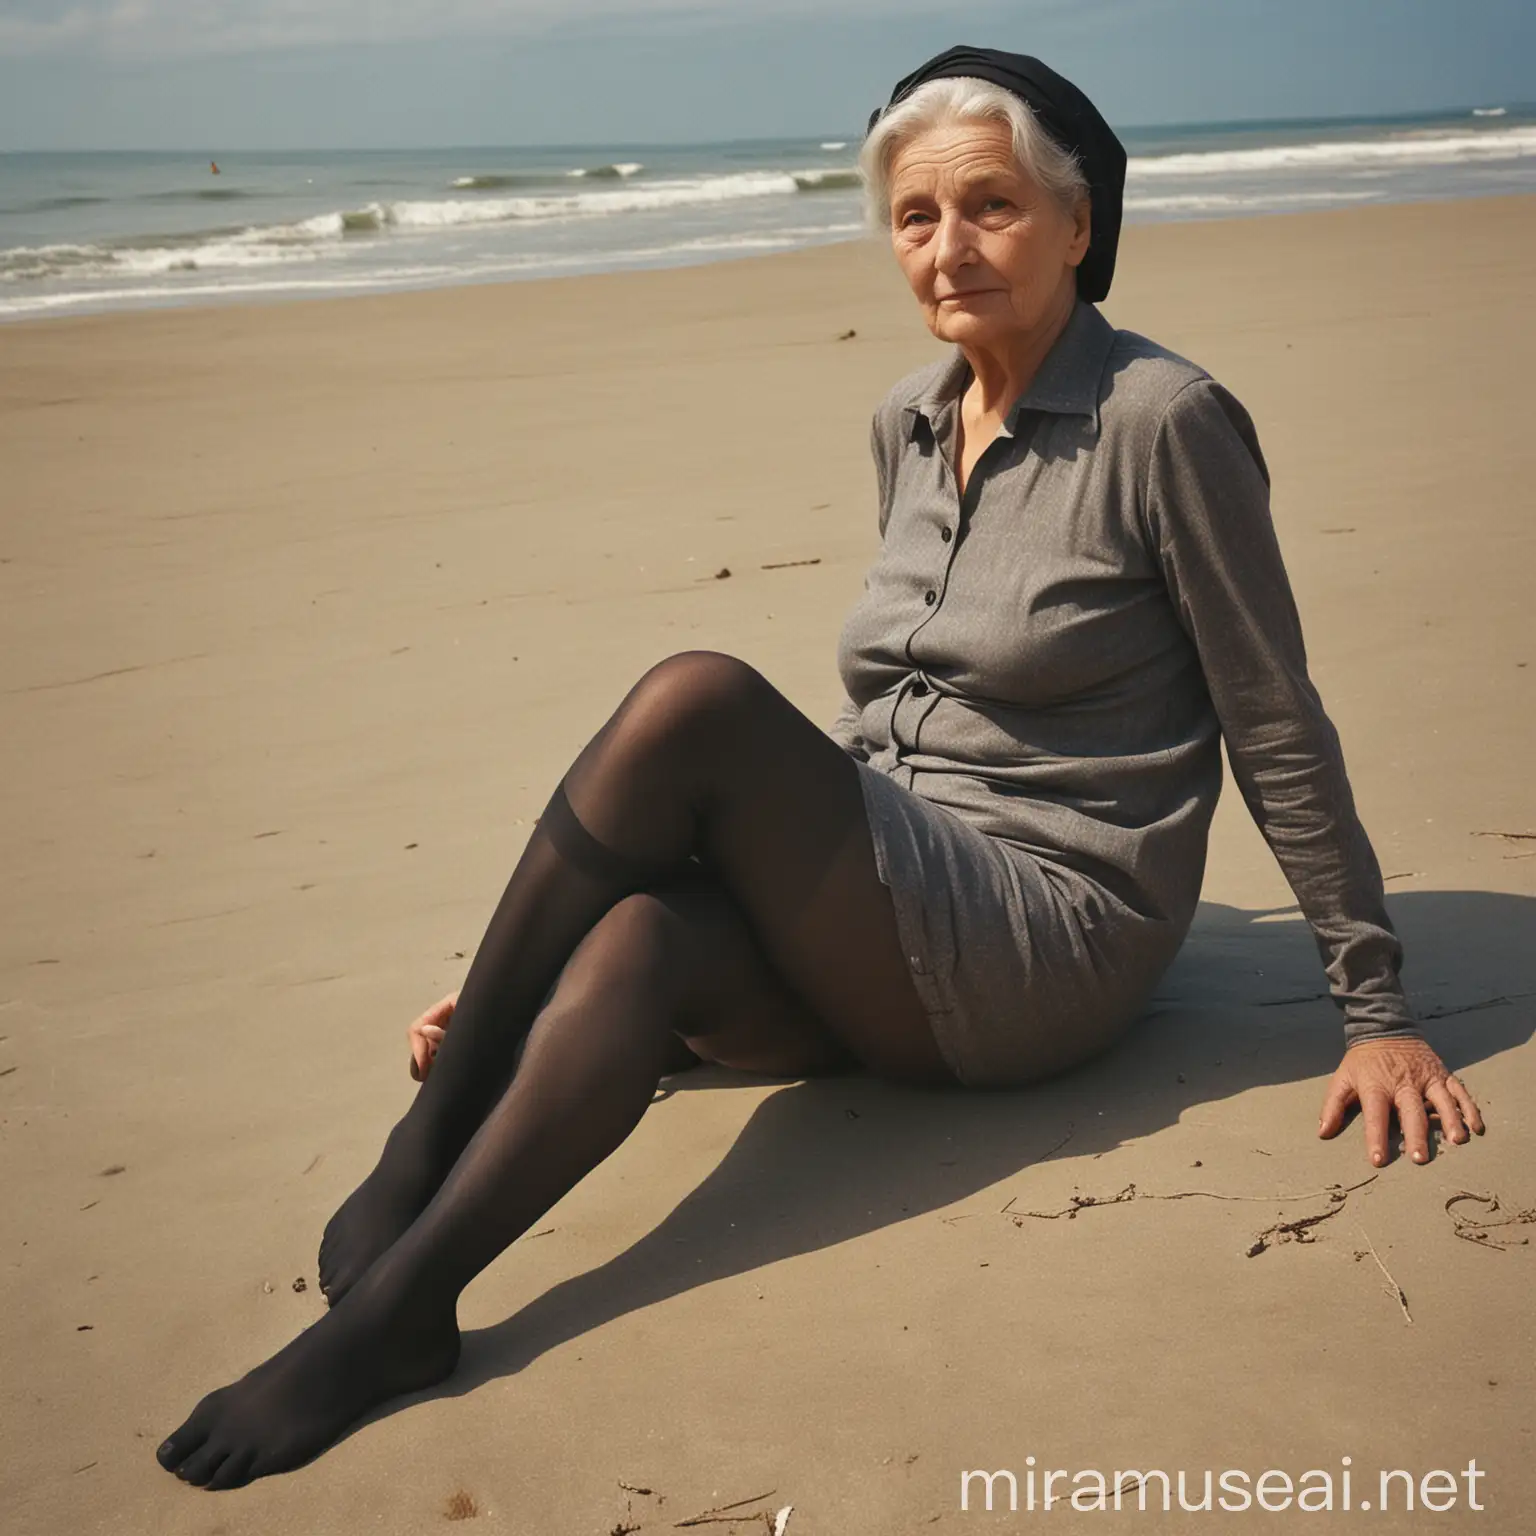 alte frau, Sitzt am Strand, ihre beine sind überkreuzt, nur in einer dünnen schwarzen Strumpfhose, 1969, ghisslan dussart 